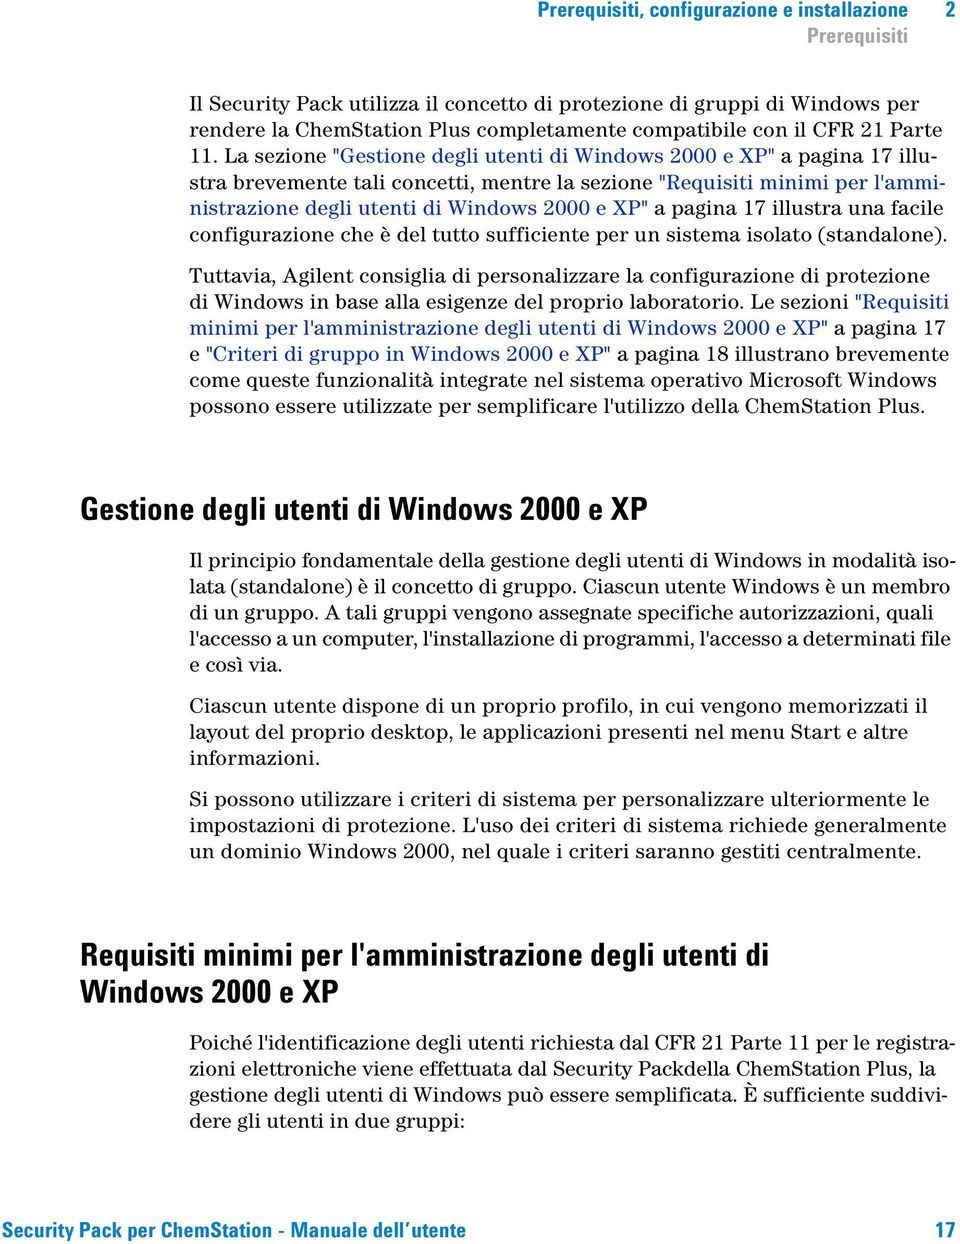 La sezione "Gestione degli utenti di Windows 2000 e XP" a pagina 17 illustra brevemente tali concetti, mentre la sezione "Requisiti minimi per l'amministrazione degli utenti di Windows 2000 e XP" a